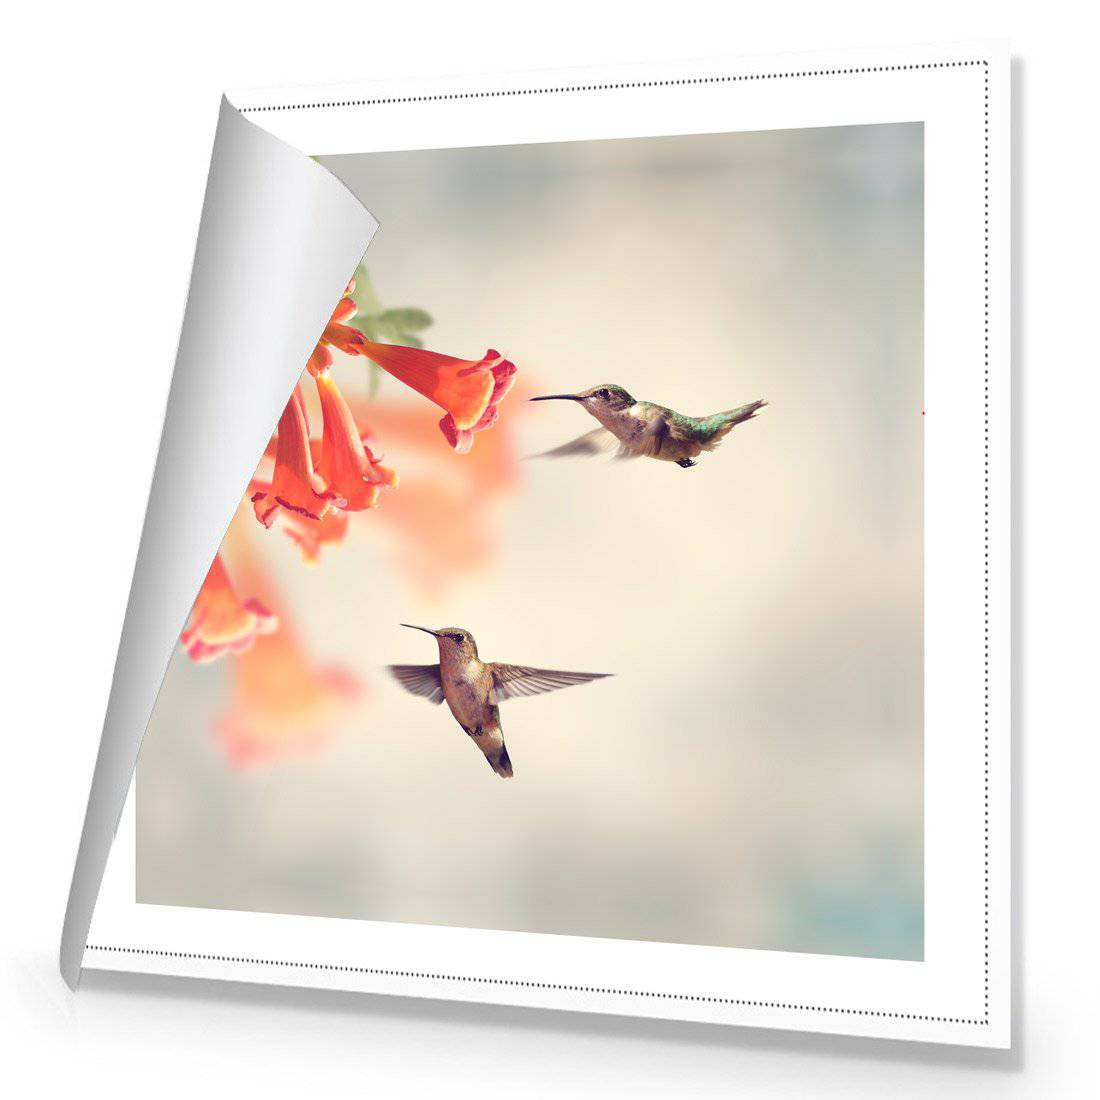 Hummingbird Hover Canvas Art-Canvas-Wall Art Designs-30x30cm-Rolled Canvas-Wall Art Designs